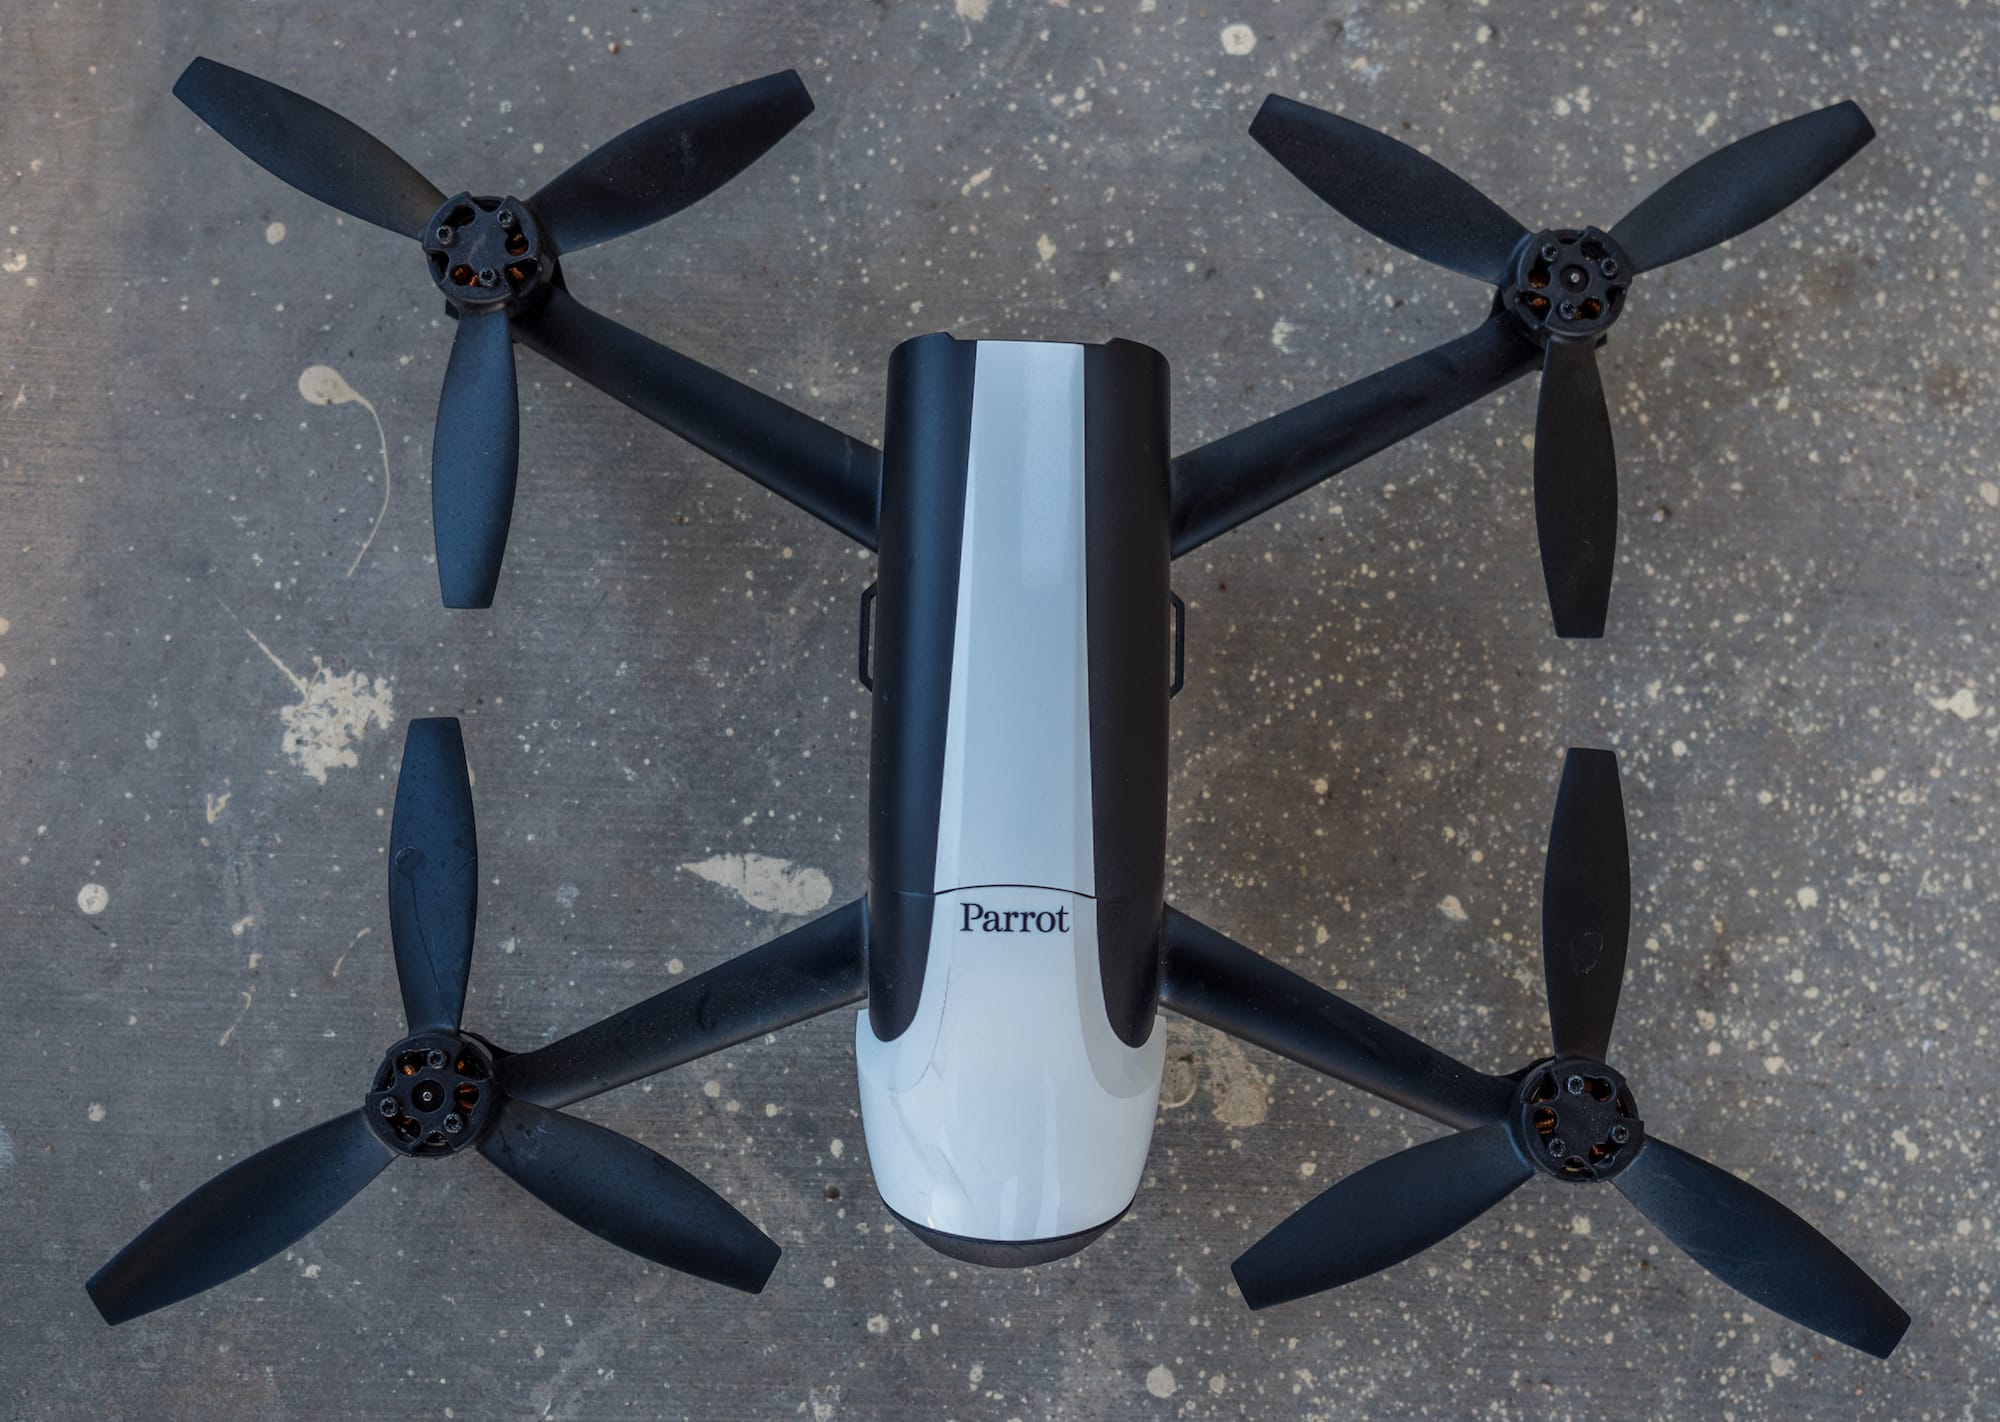 Best outdoor gear 2017: Parrot Bebop 2 drone